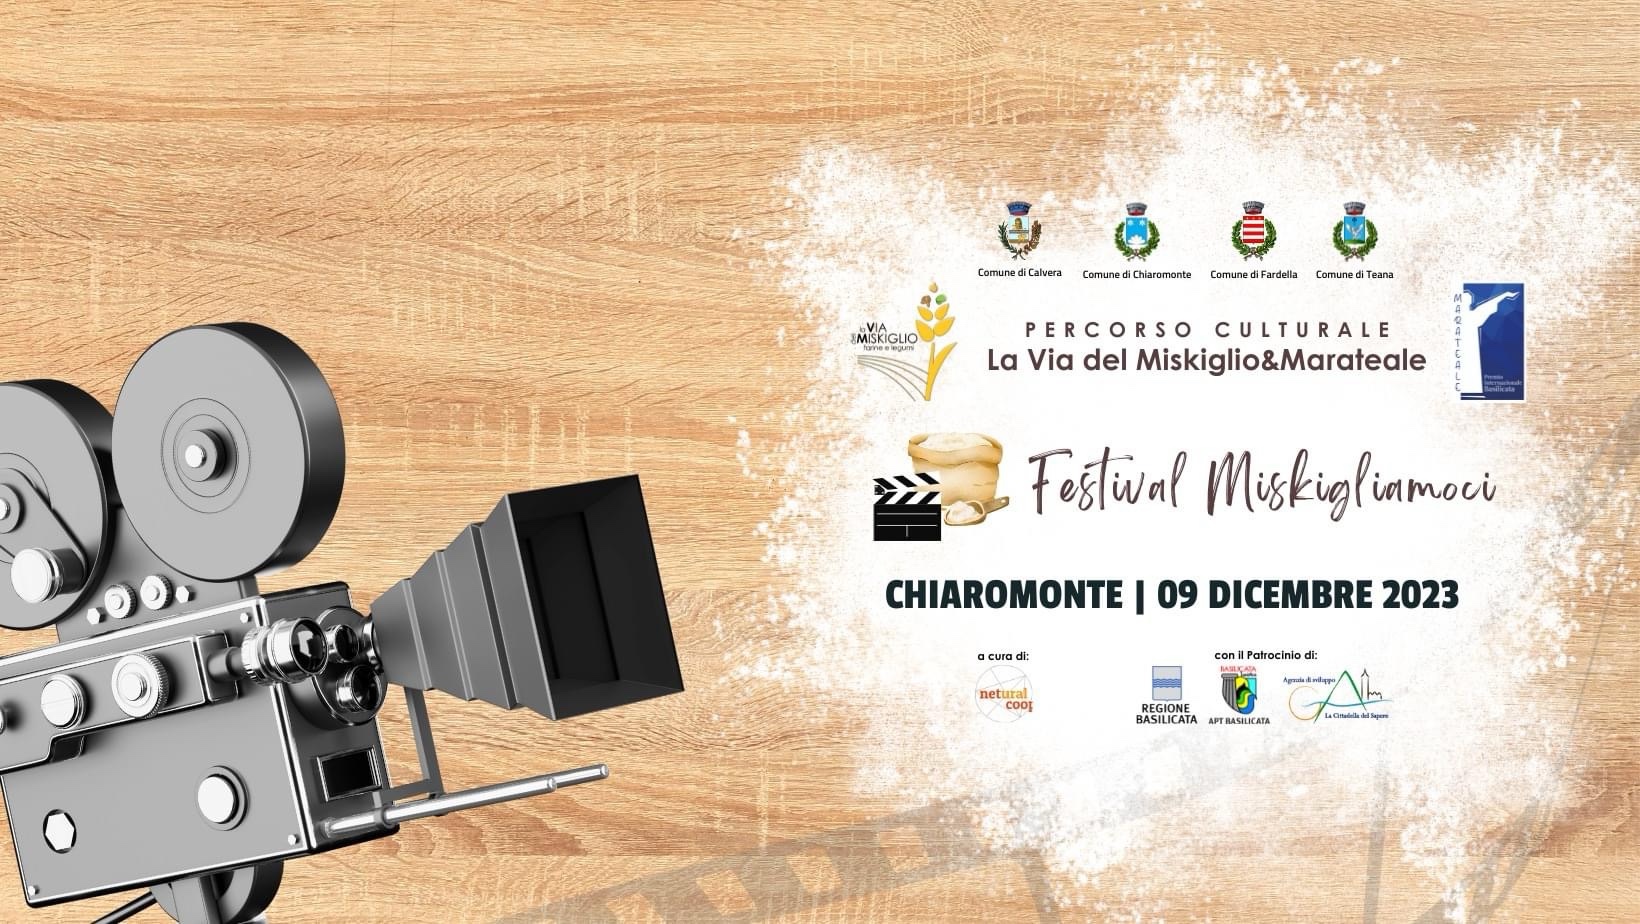 Al momento stai visualizzando L’evento Inaugurale del Festival Miskigliamoci a Chiaromonte il 9 Dicembre 2023